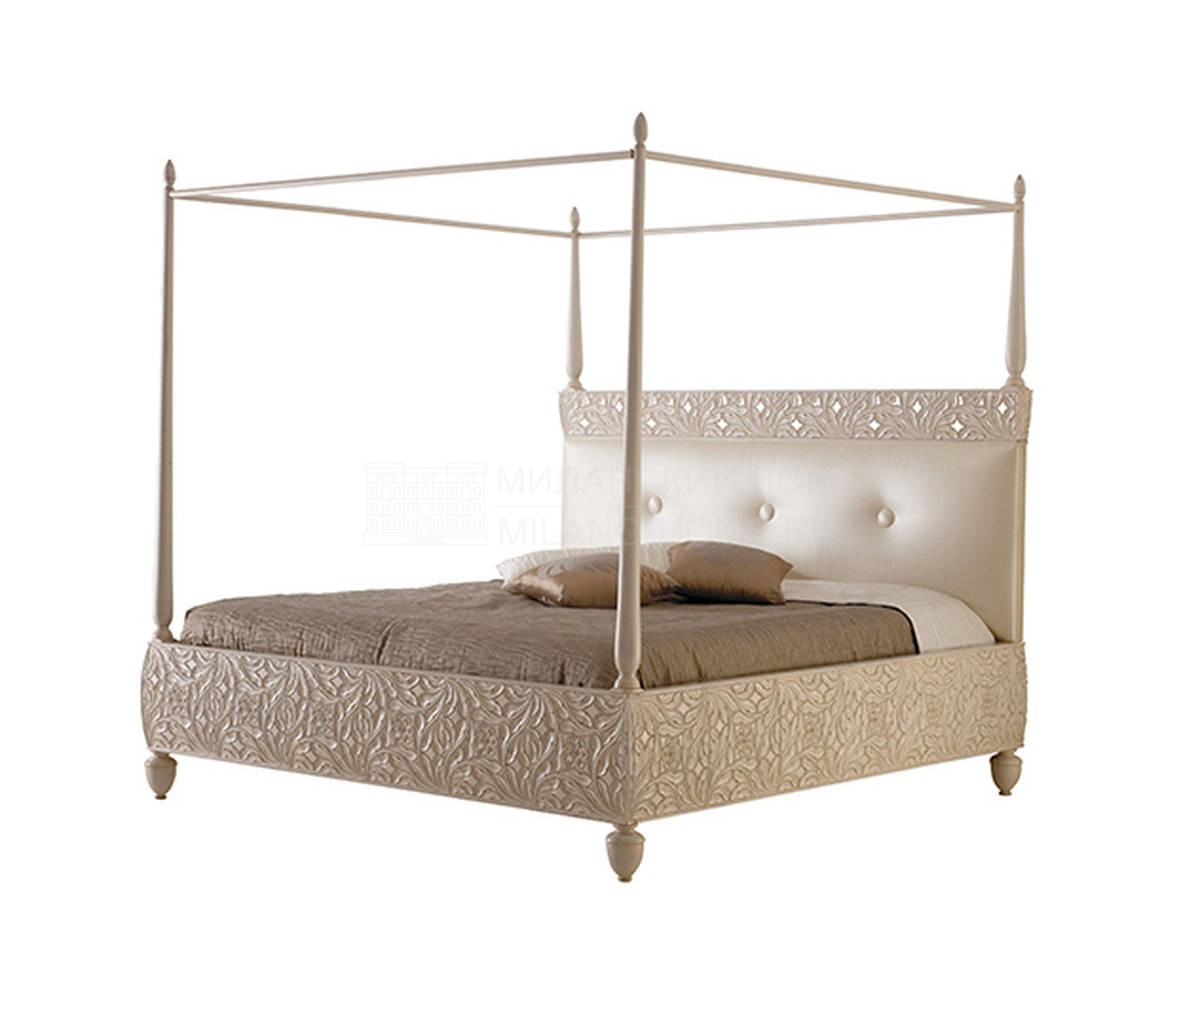 Двуспальная кровать Rebecca bed baldacchino из Италии фабрики BIZZOTTO